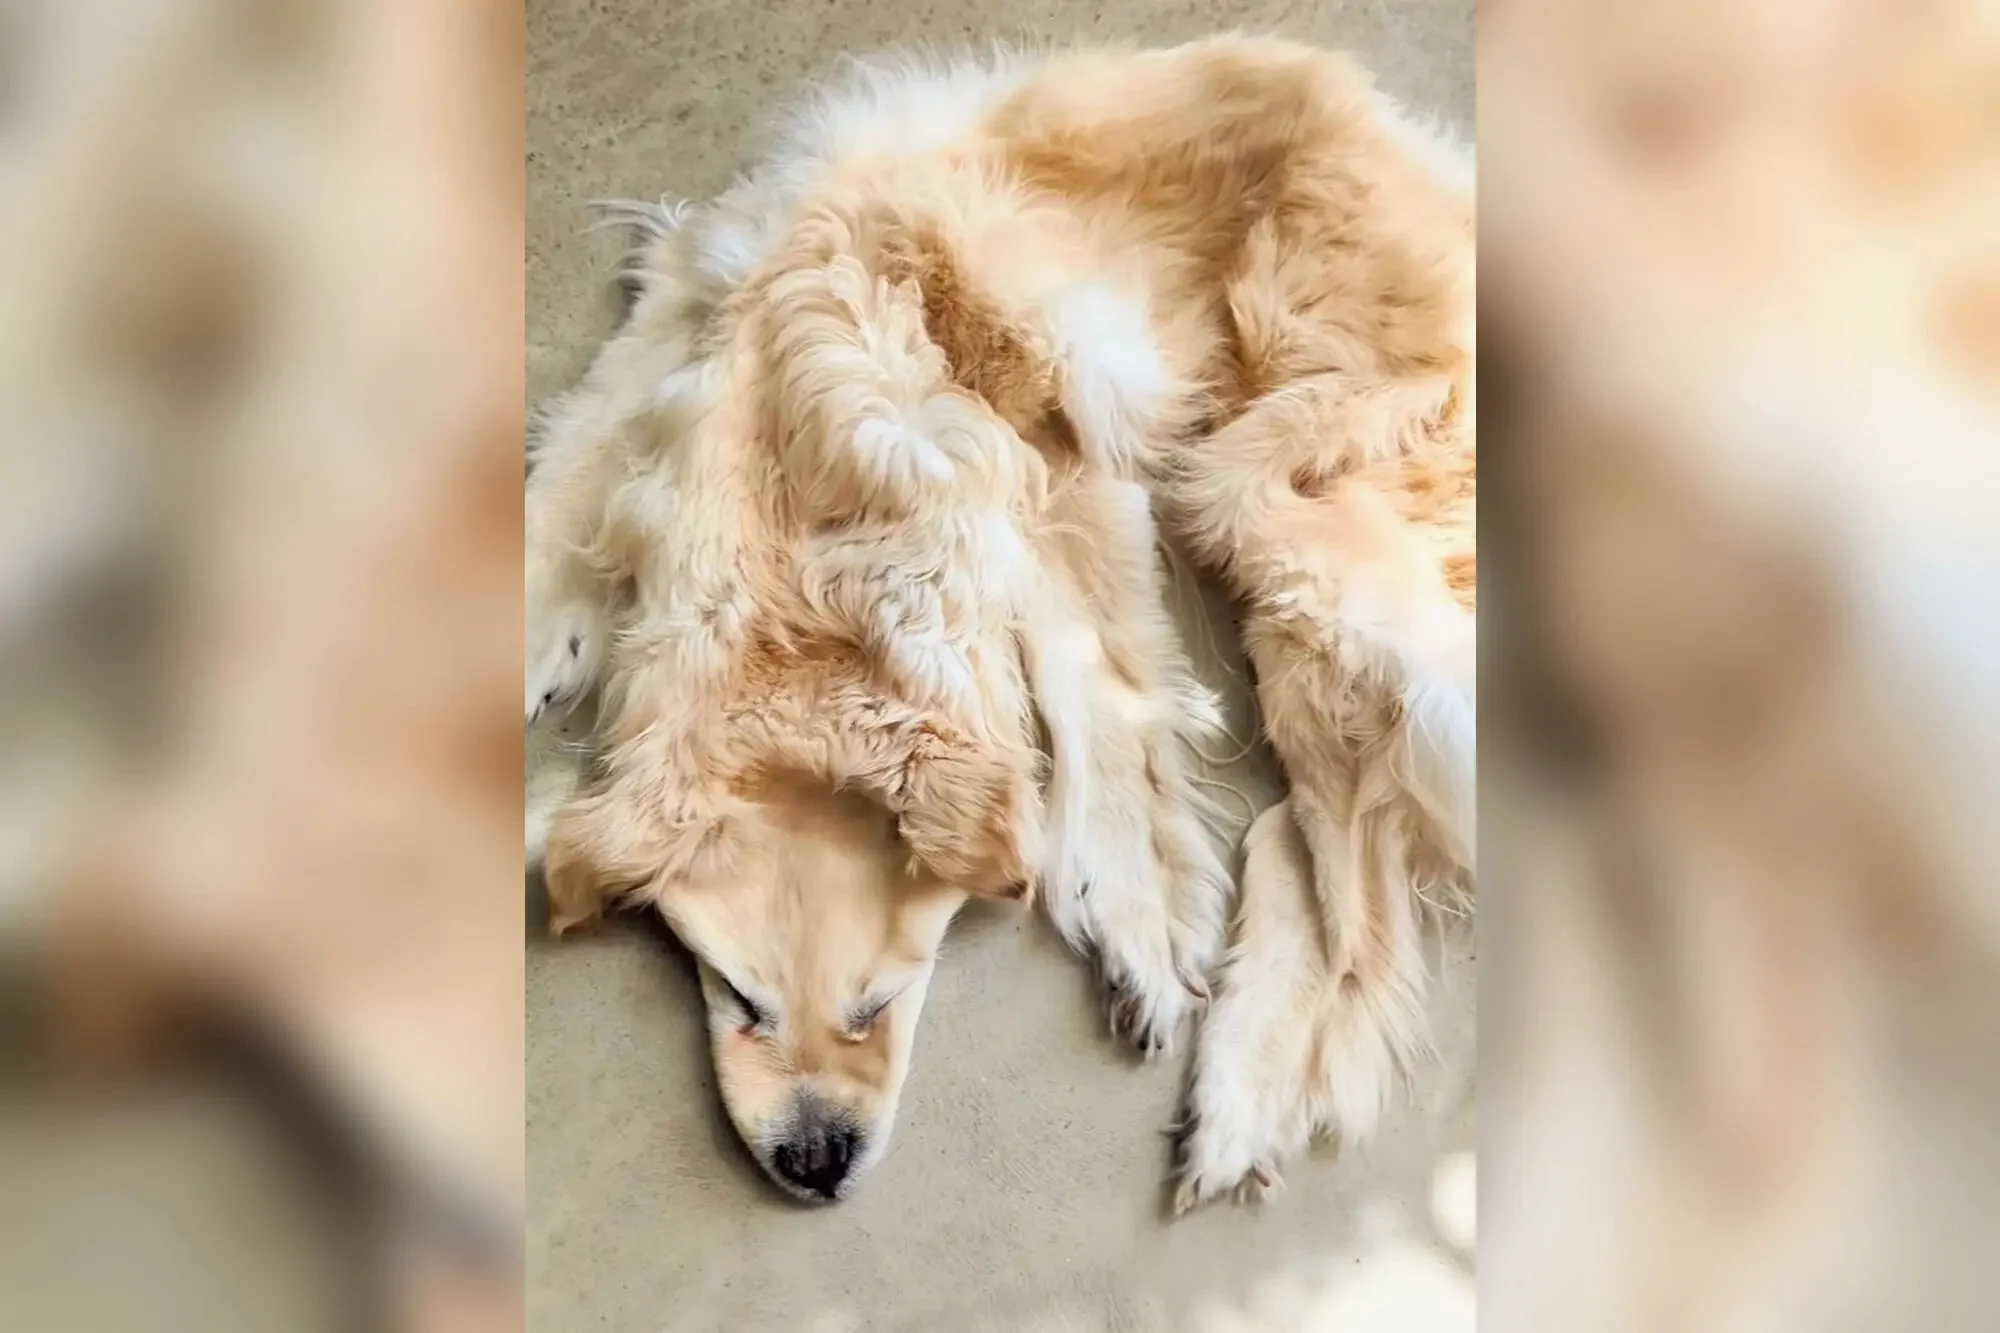 Cringe: Οικογένεια μετέτρεψε τον νεκρό σκύλο της σε χαλάκι (ΦΩΤΟ)